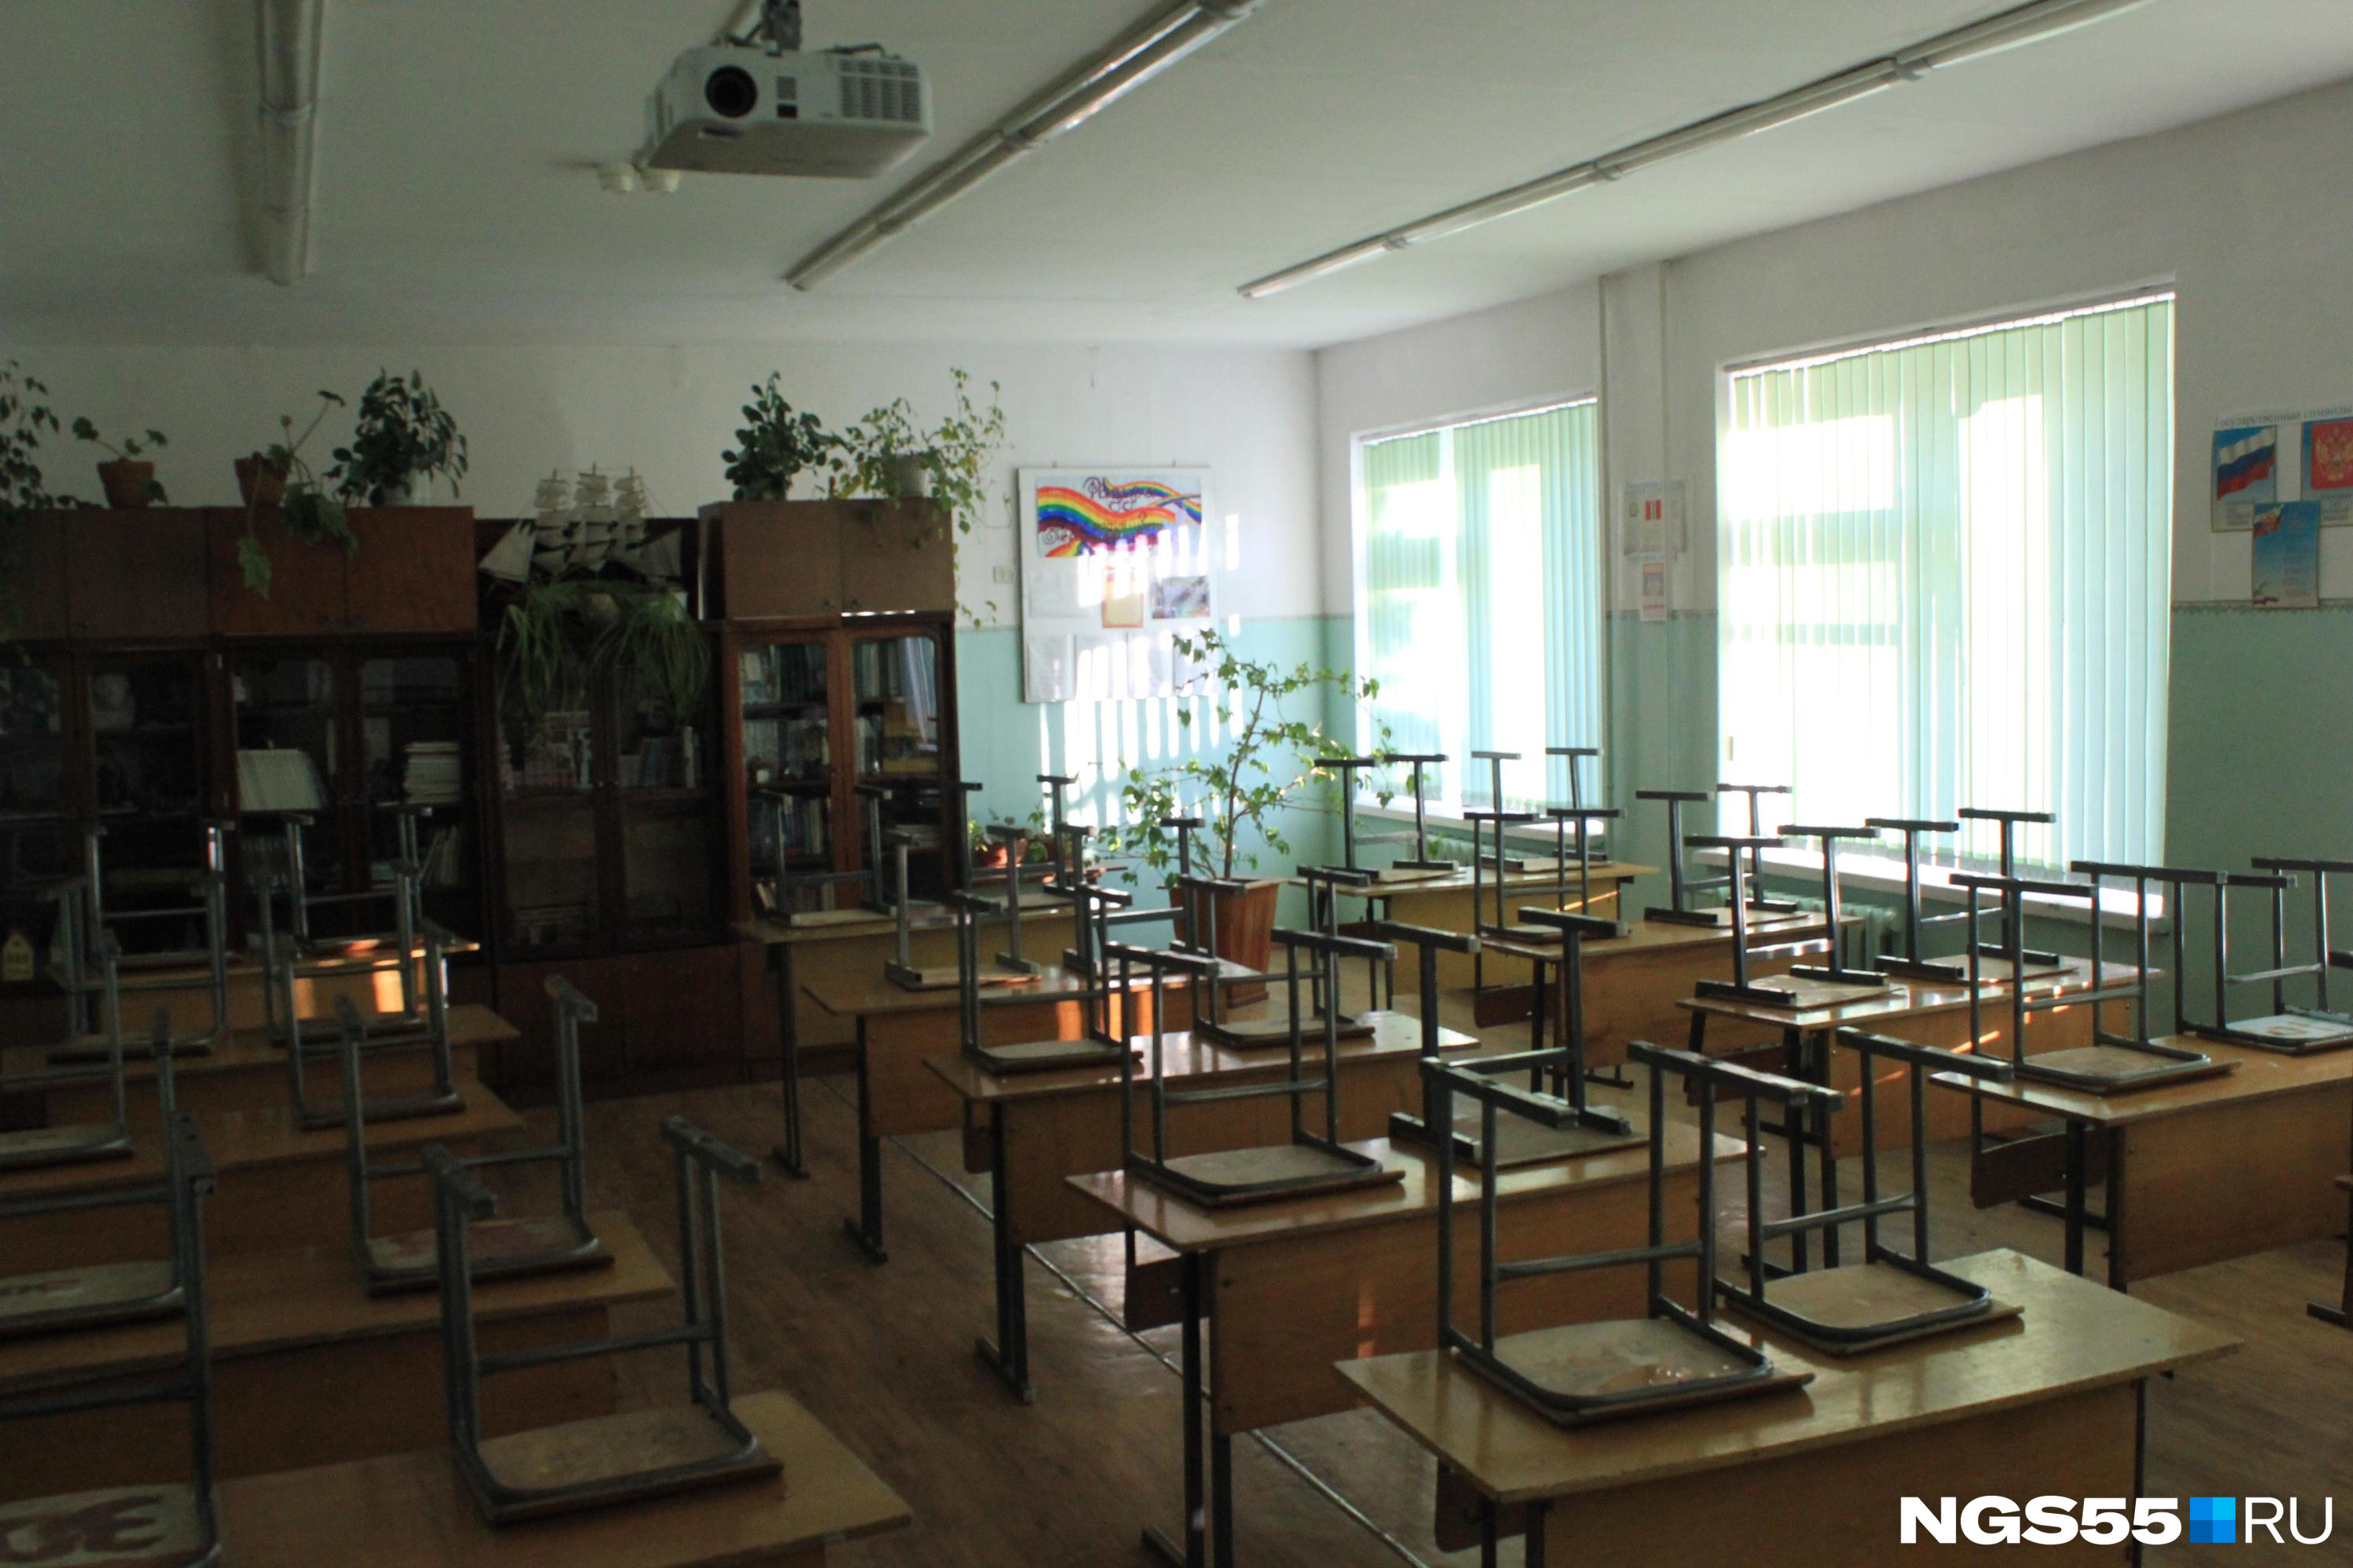 Мы спросили у мэрии Омска, где будут учиться дети из закрытых на ремонт школ. Вот что нам ответили